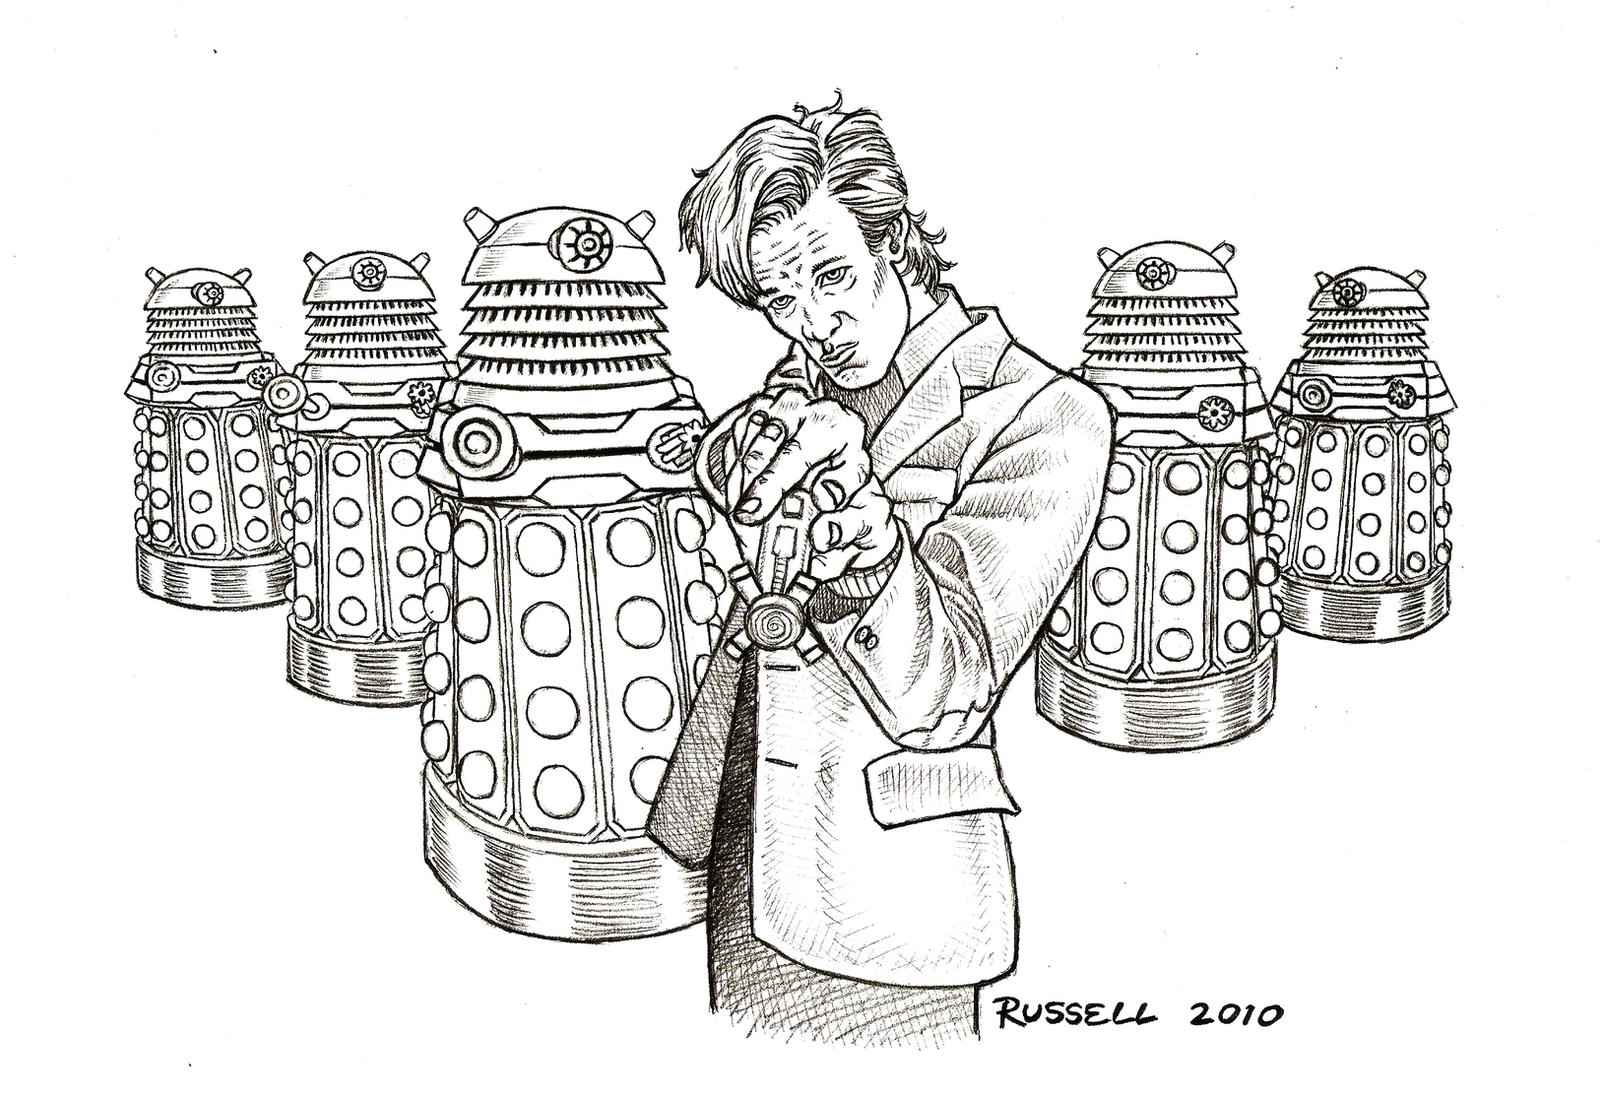 Doctor Who Vs The Daleks